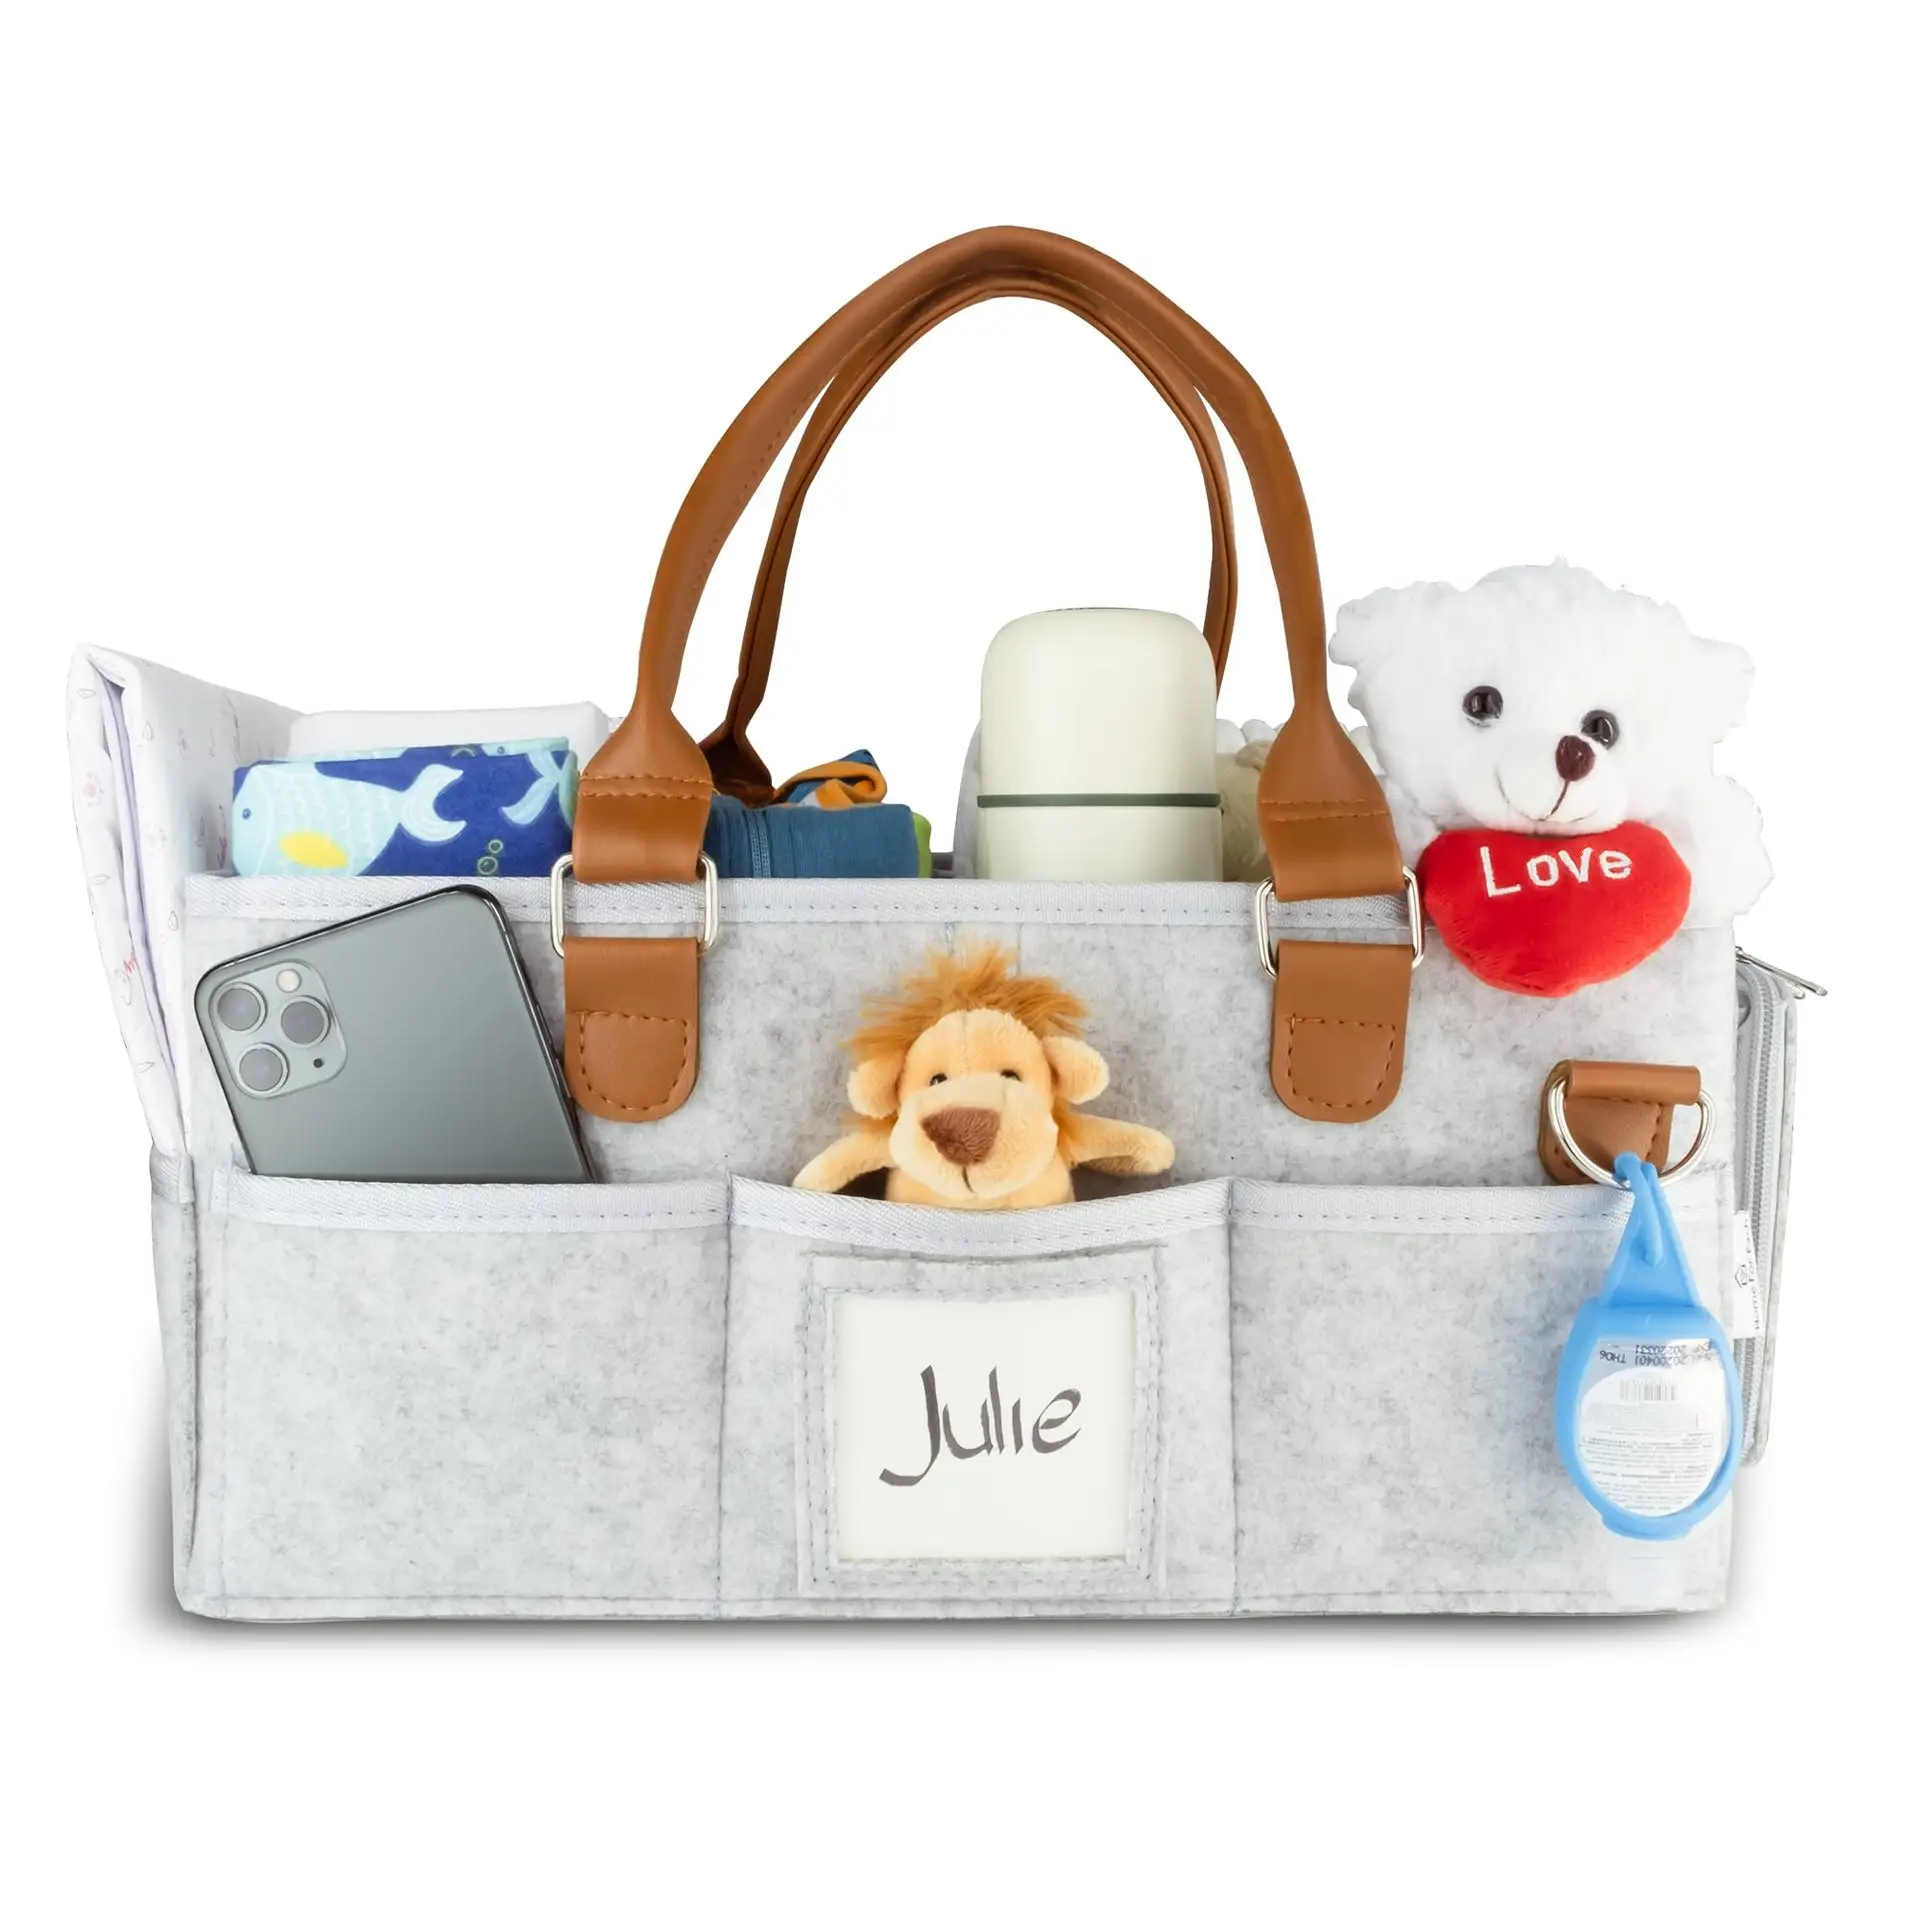 Portable felt baby diaper caddy organizer bag nursery storage bin for shopping travel